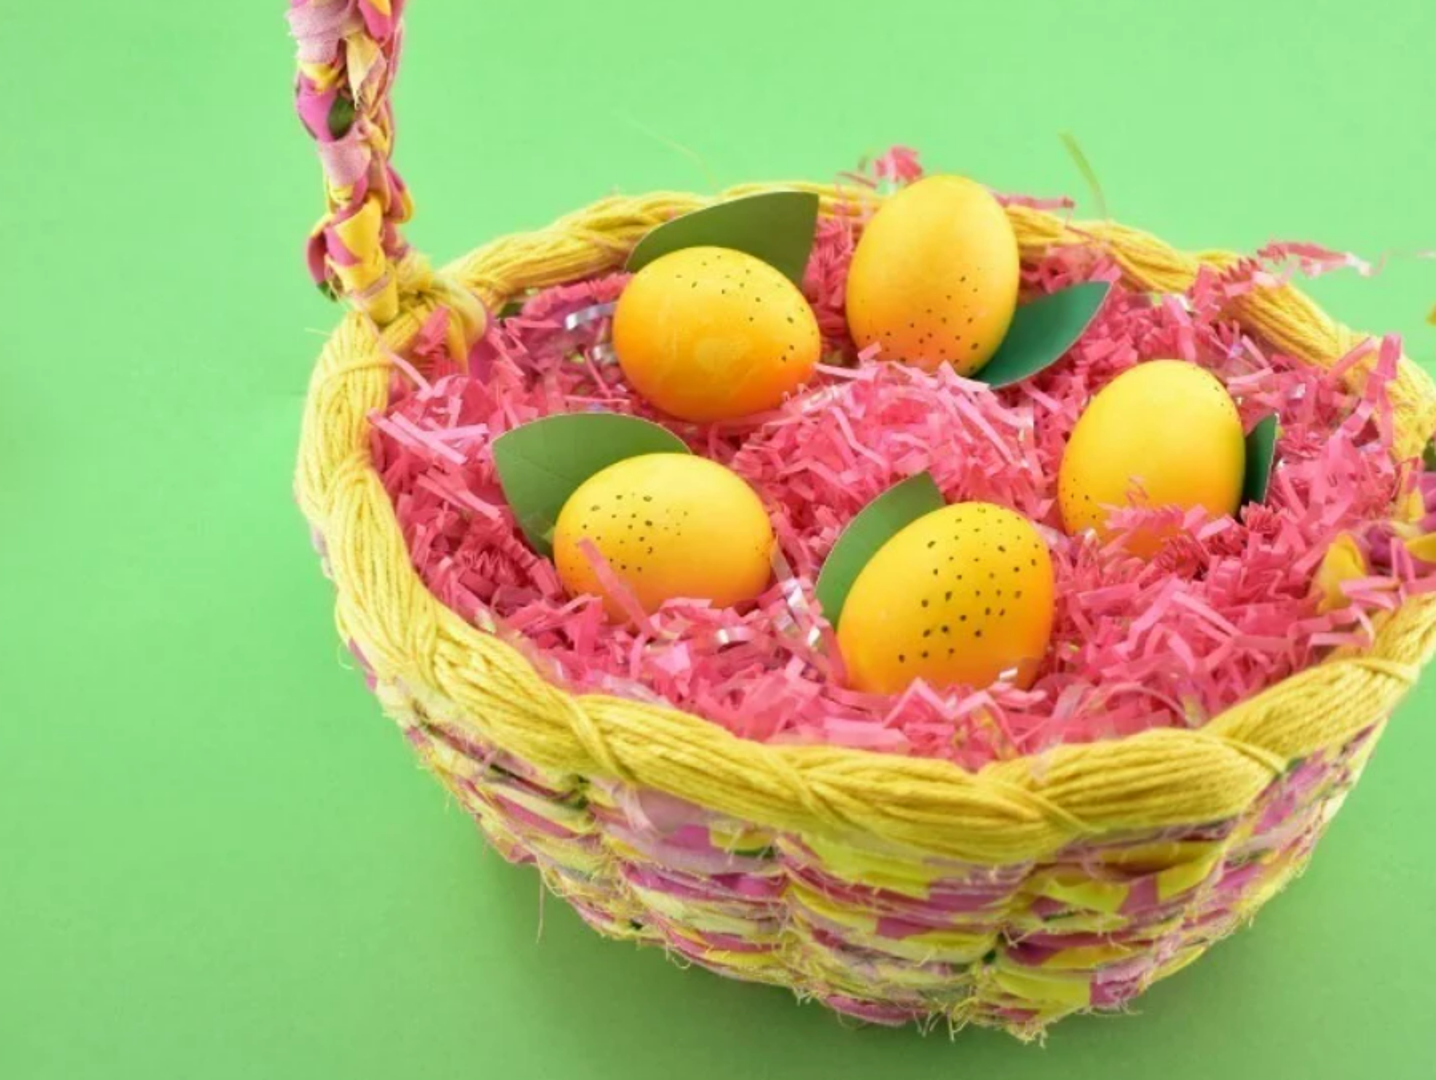 Uskrsna jaja limuni: Ova jaja inspirirana limunom izgledaju gotovo kao pravi limuni. Obojite svoja bijela jaja u žuto, zatim izrežite zeleni papir ili karton u obliku listova prije nego ih ljepilom zalijepite na svoje nove "limune".